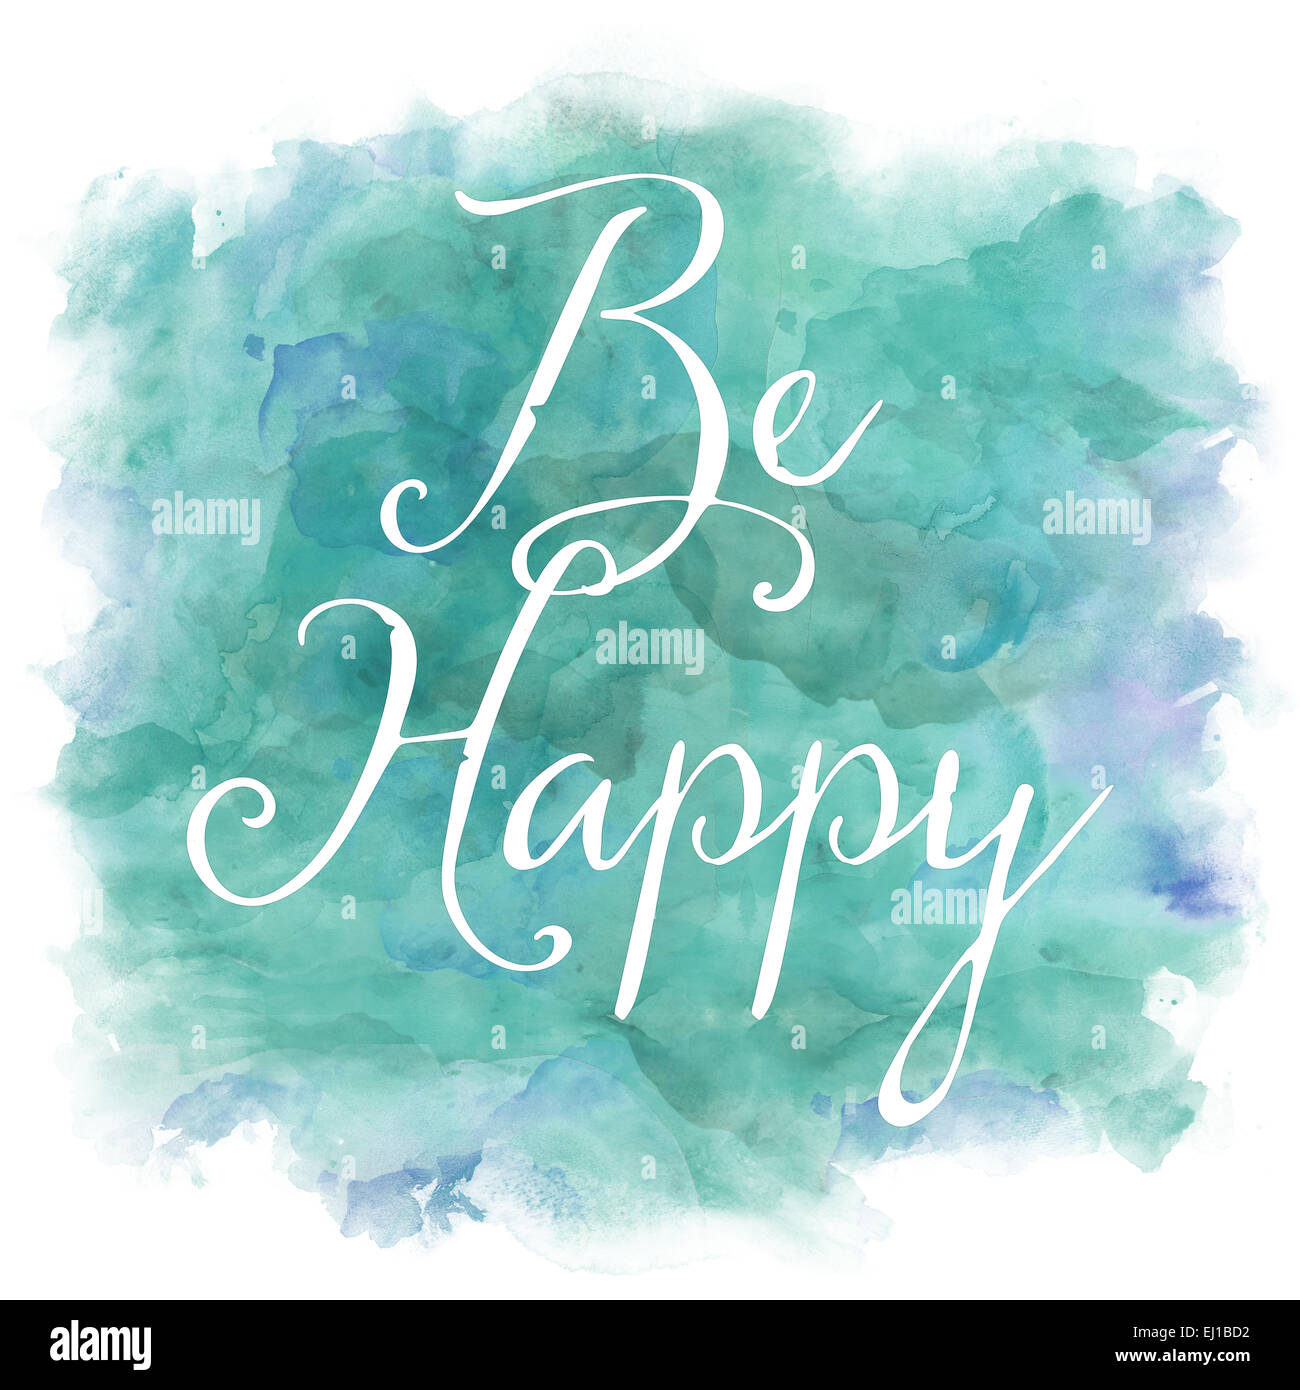 Être heureux vert menthe aqua bleu Aquarelle citation inspirante Banque D'Images